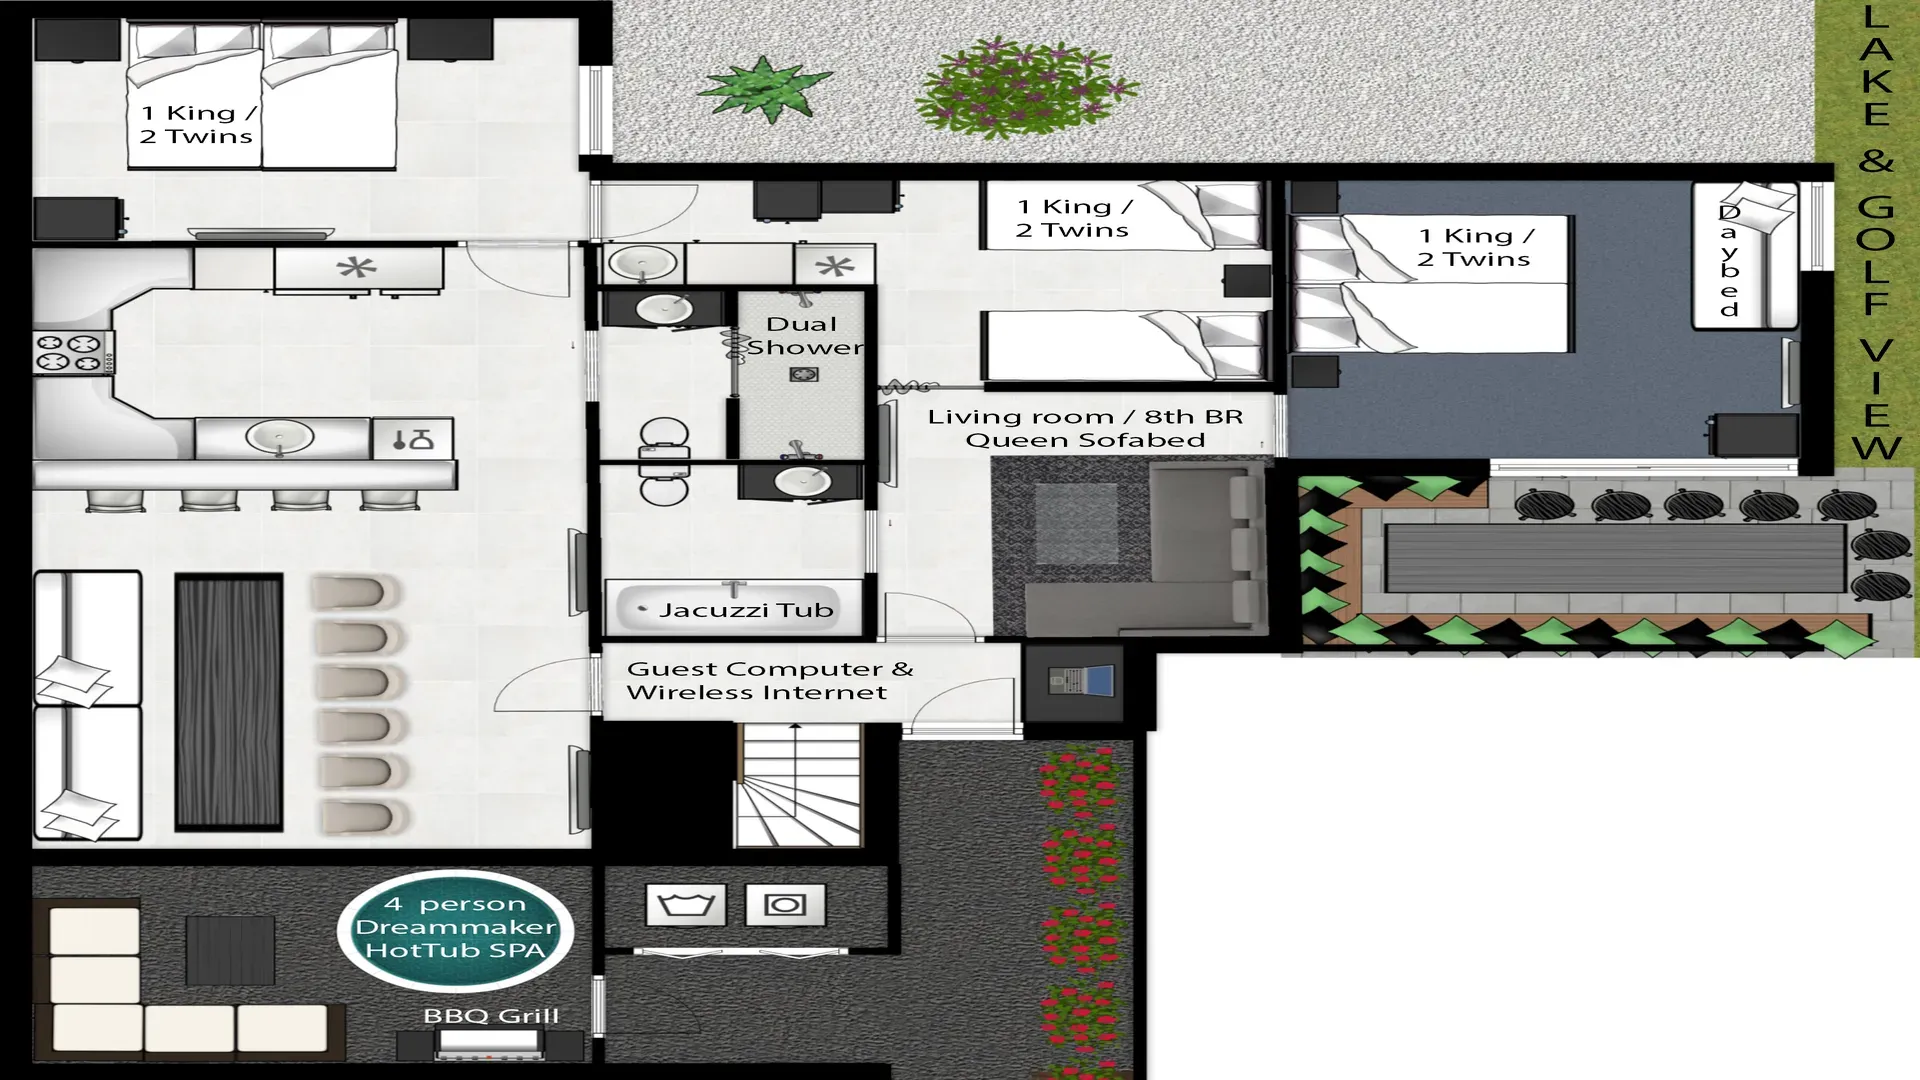 Accommodation layout